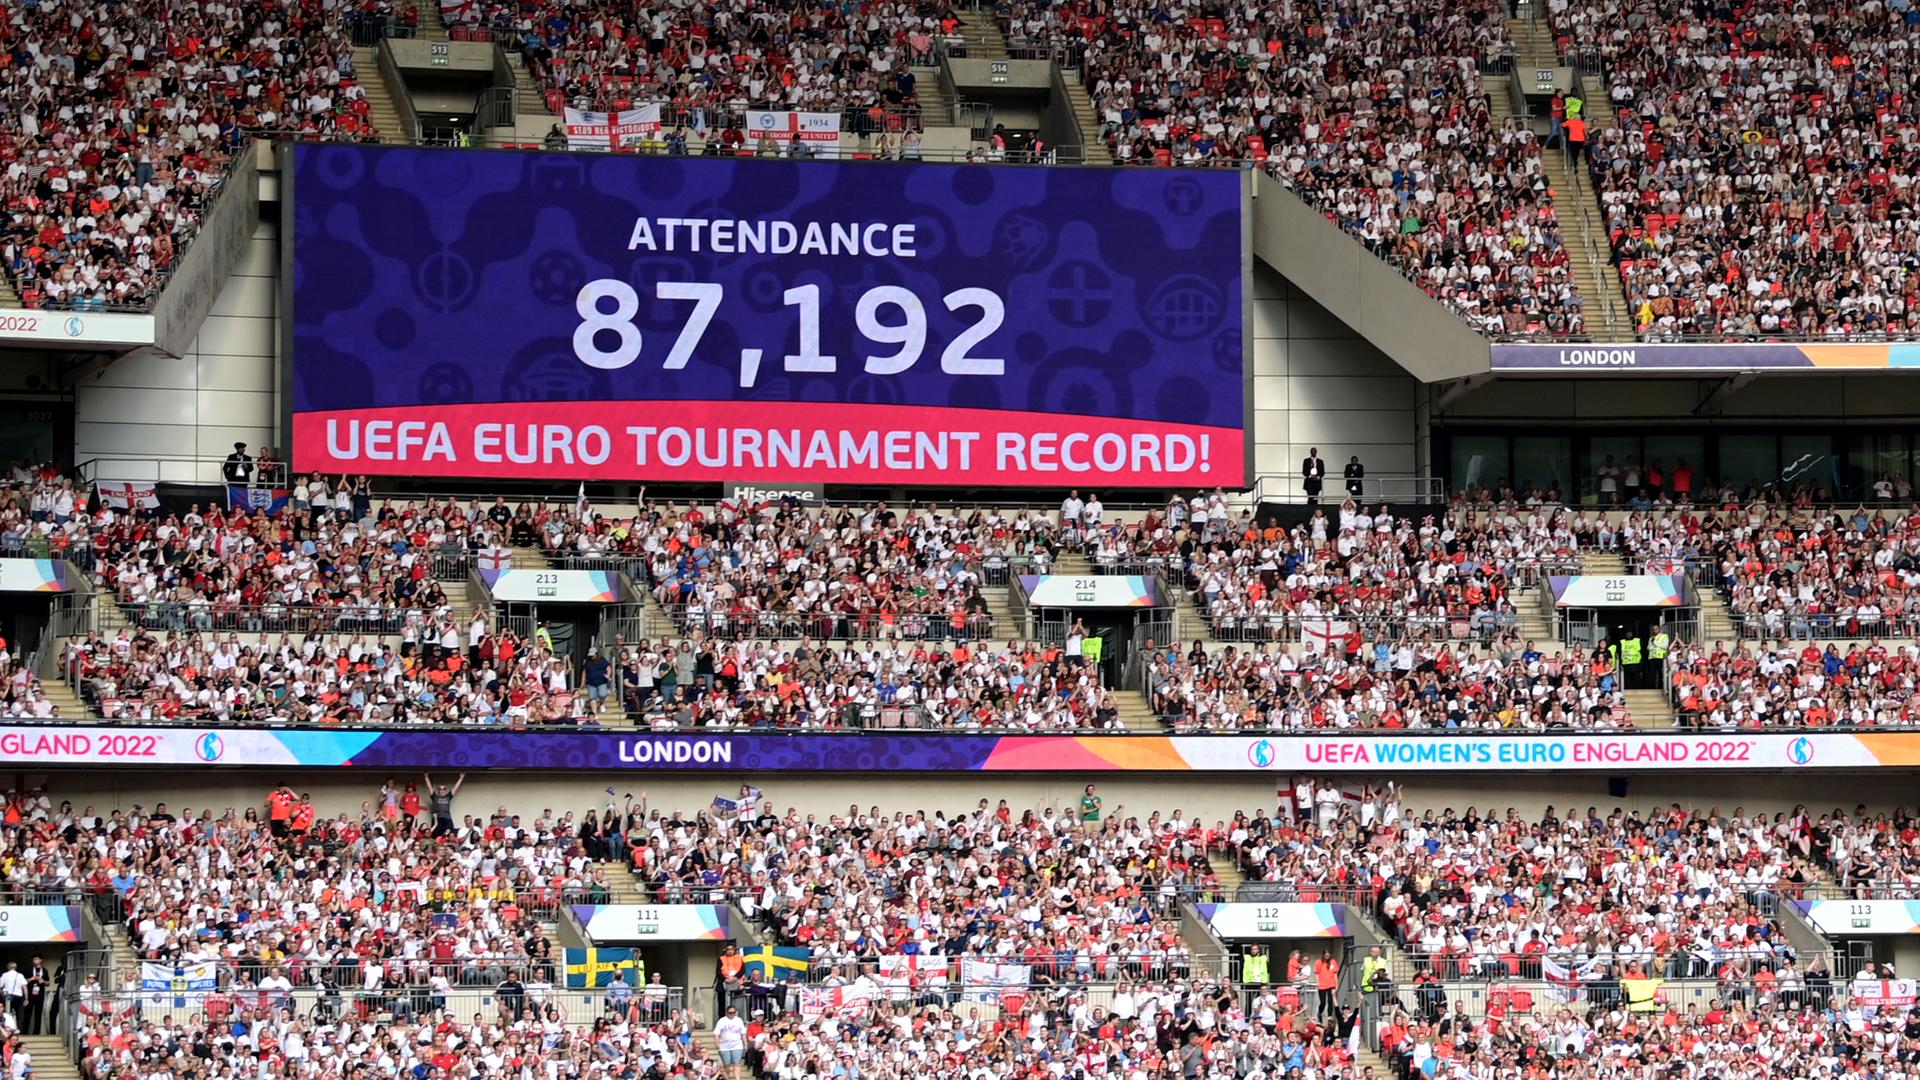 Auf einer Tafel im Wembley-Stadion wird der neue Zuschauerrekord bei einem EM-Finale verkündet - 87.192.